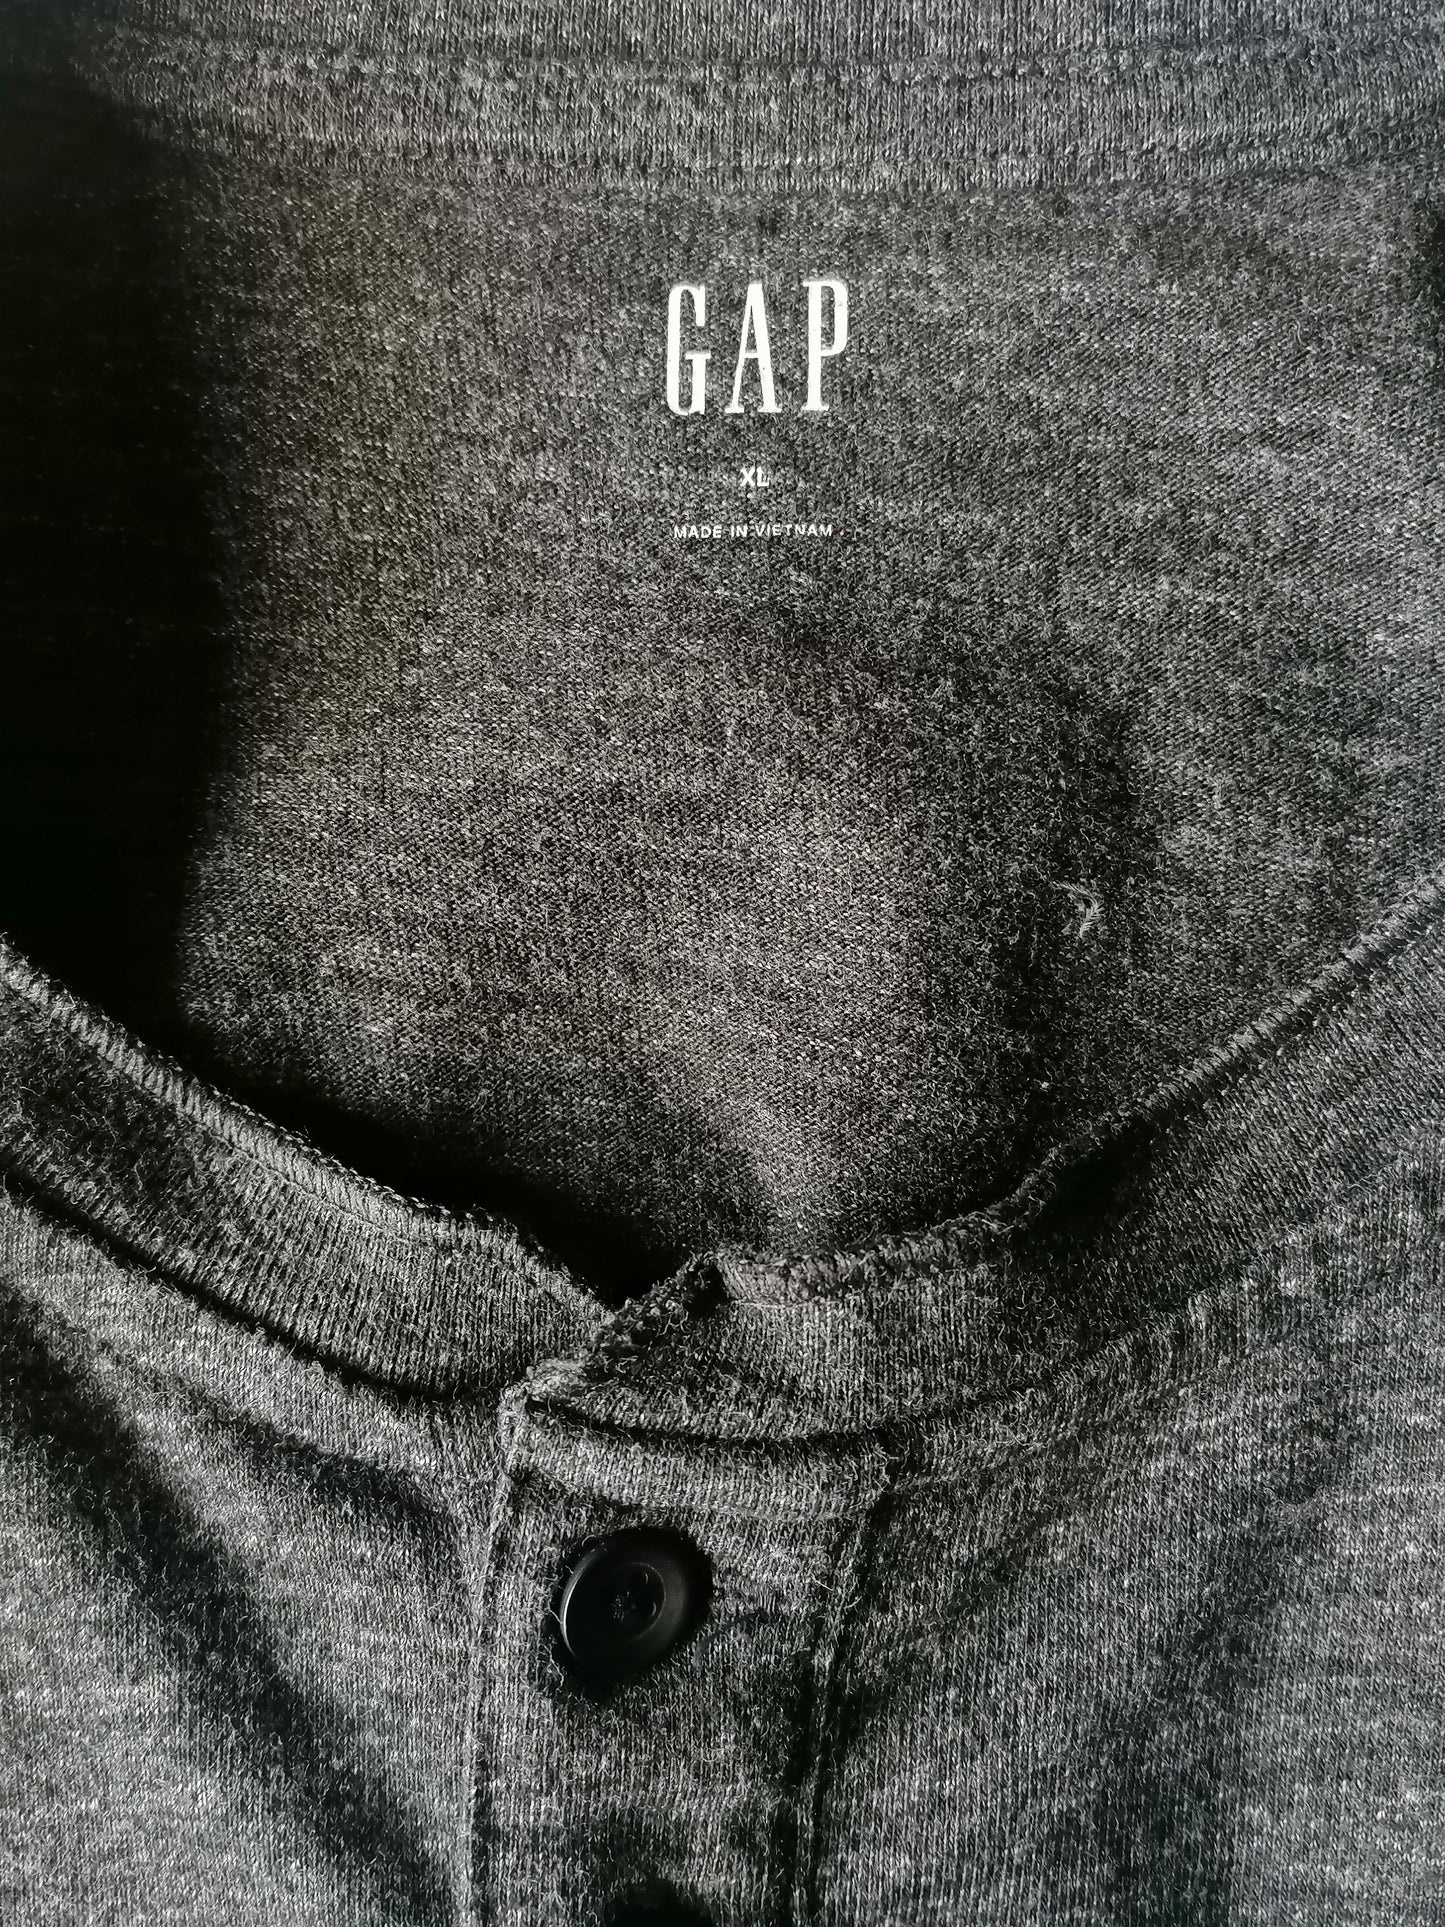 Gap Sweater delgado con botones. Gris mezclado. Tamaño xl.